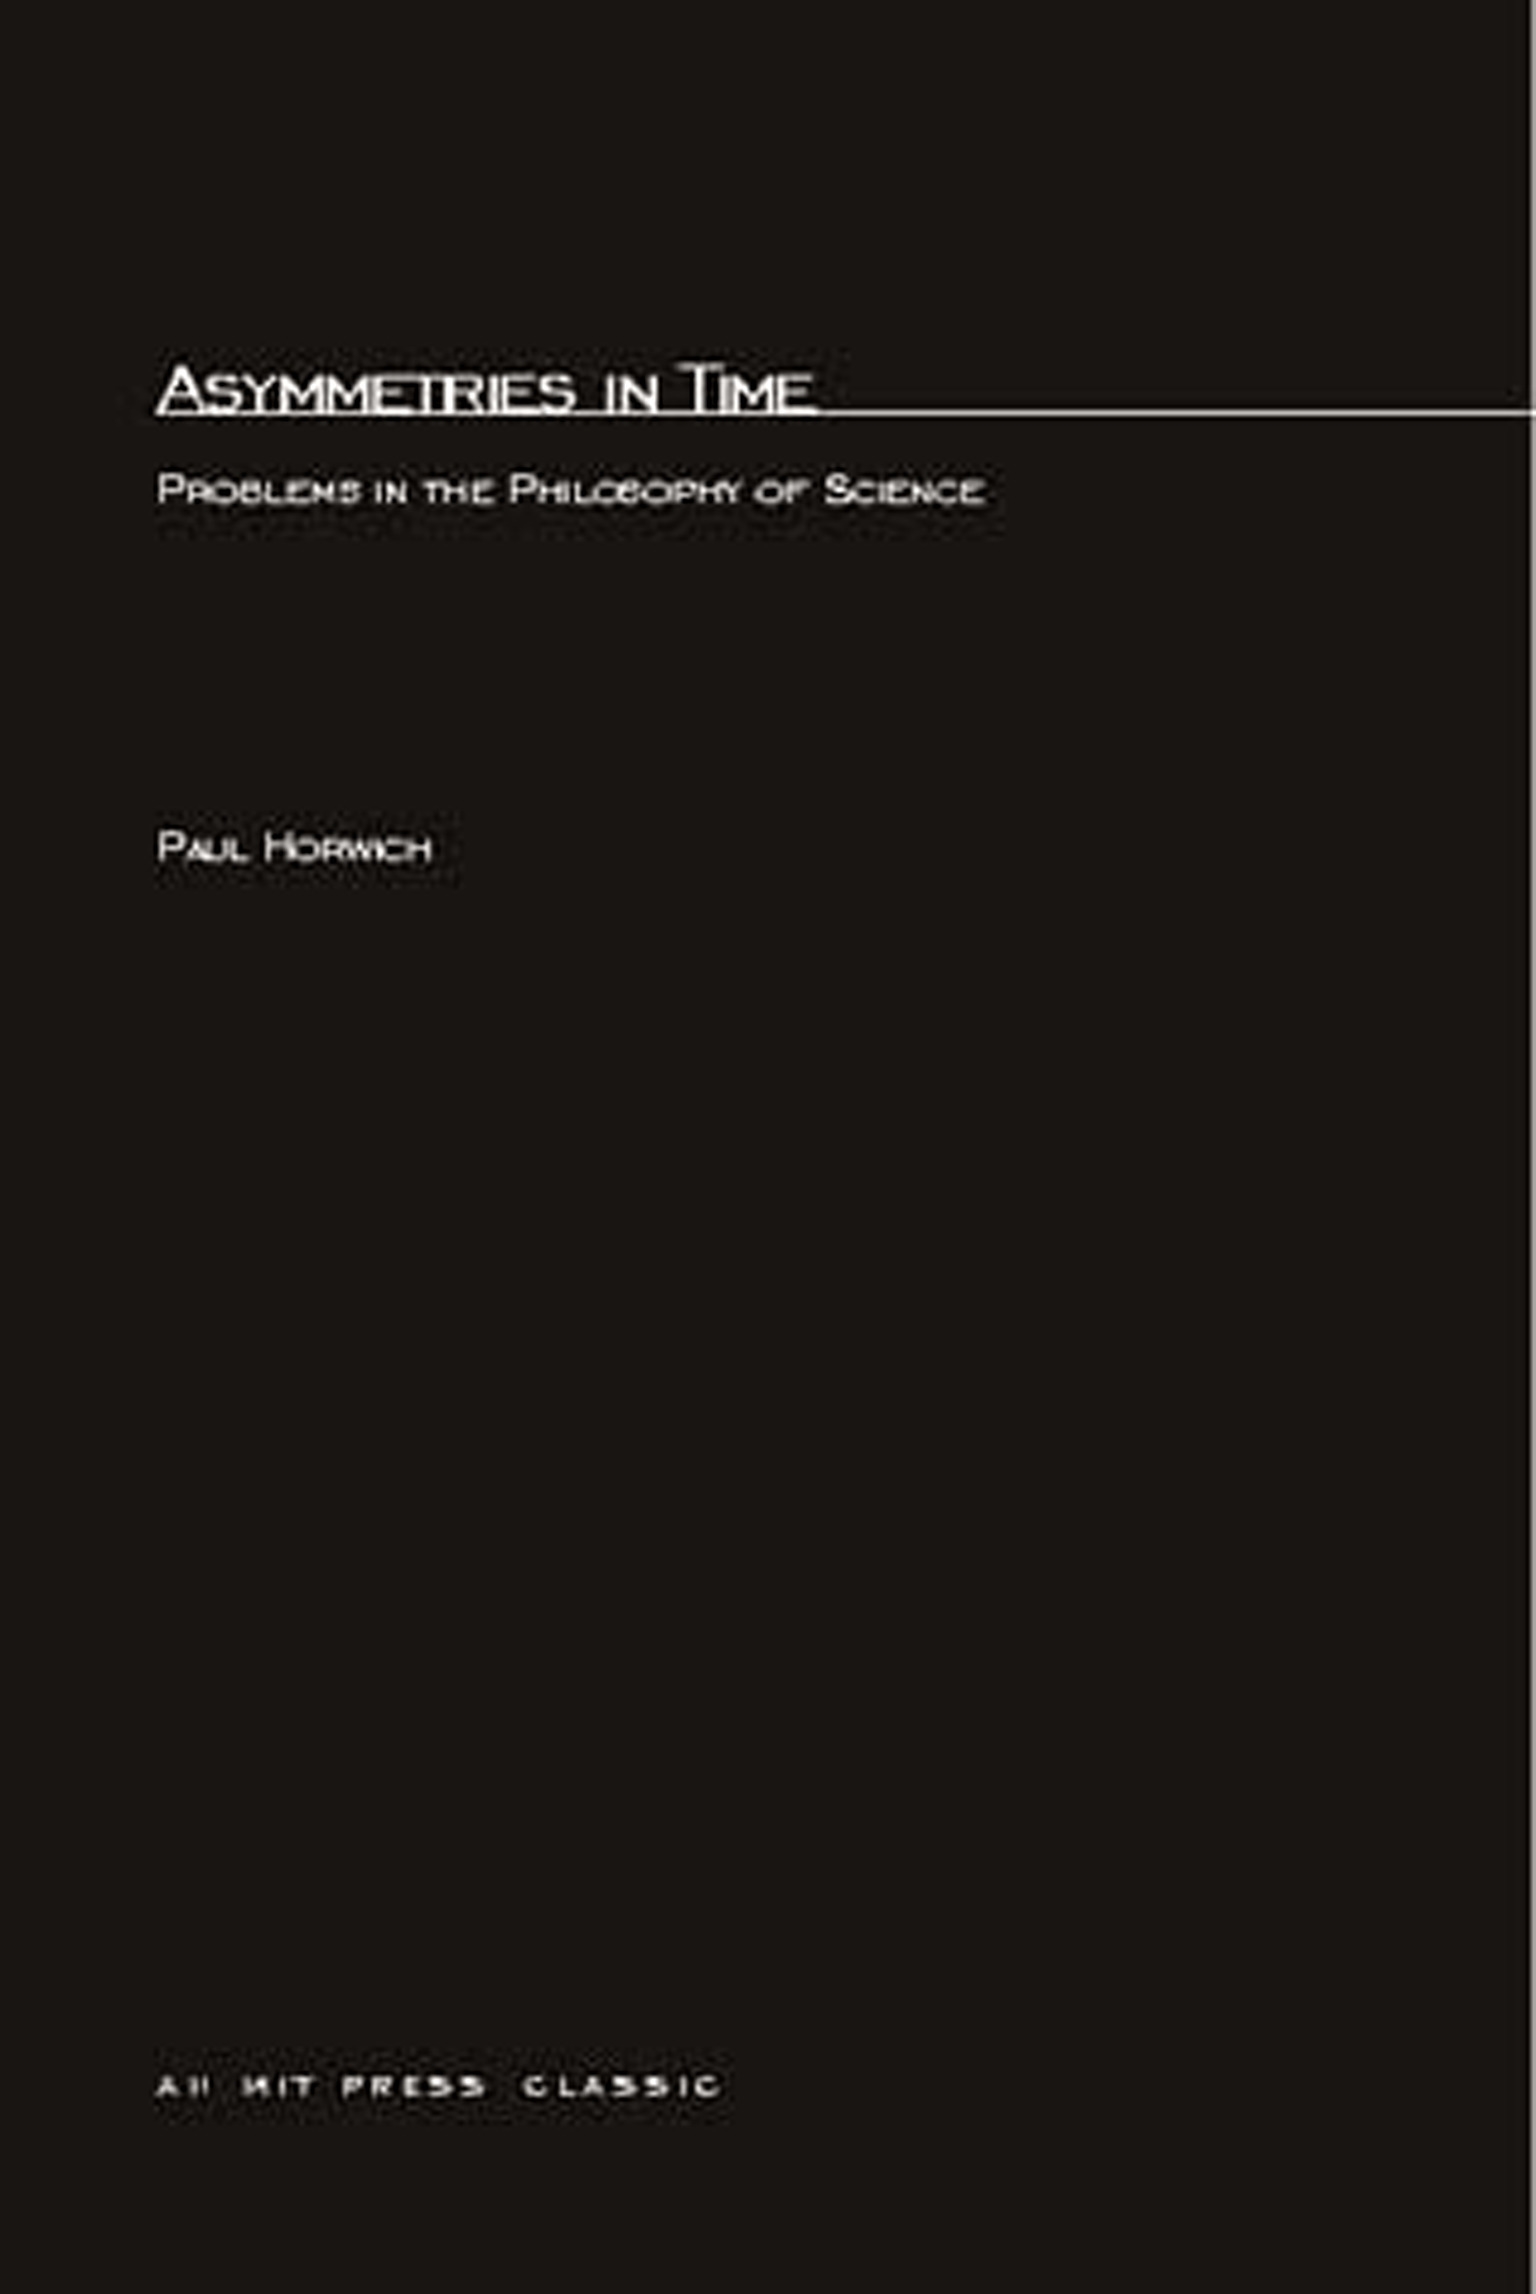 Asymmetries In Time by Paul Horwich - Penguin Books New Zealand